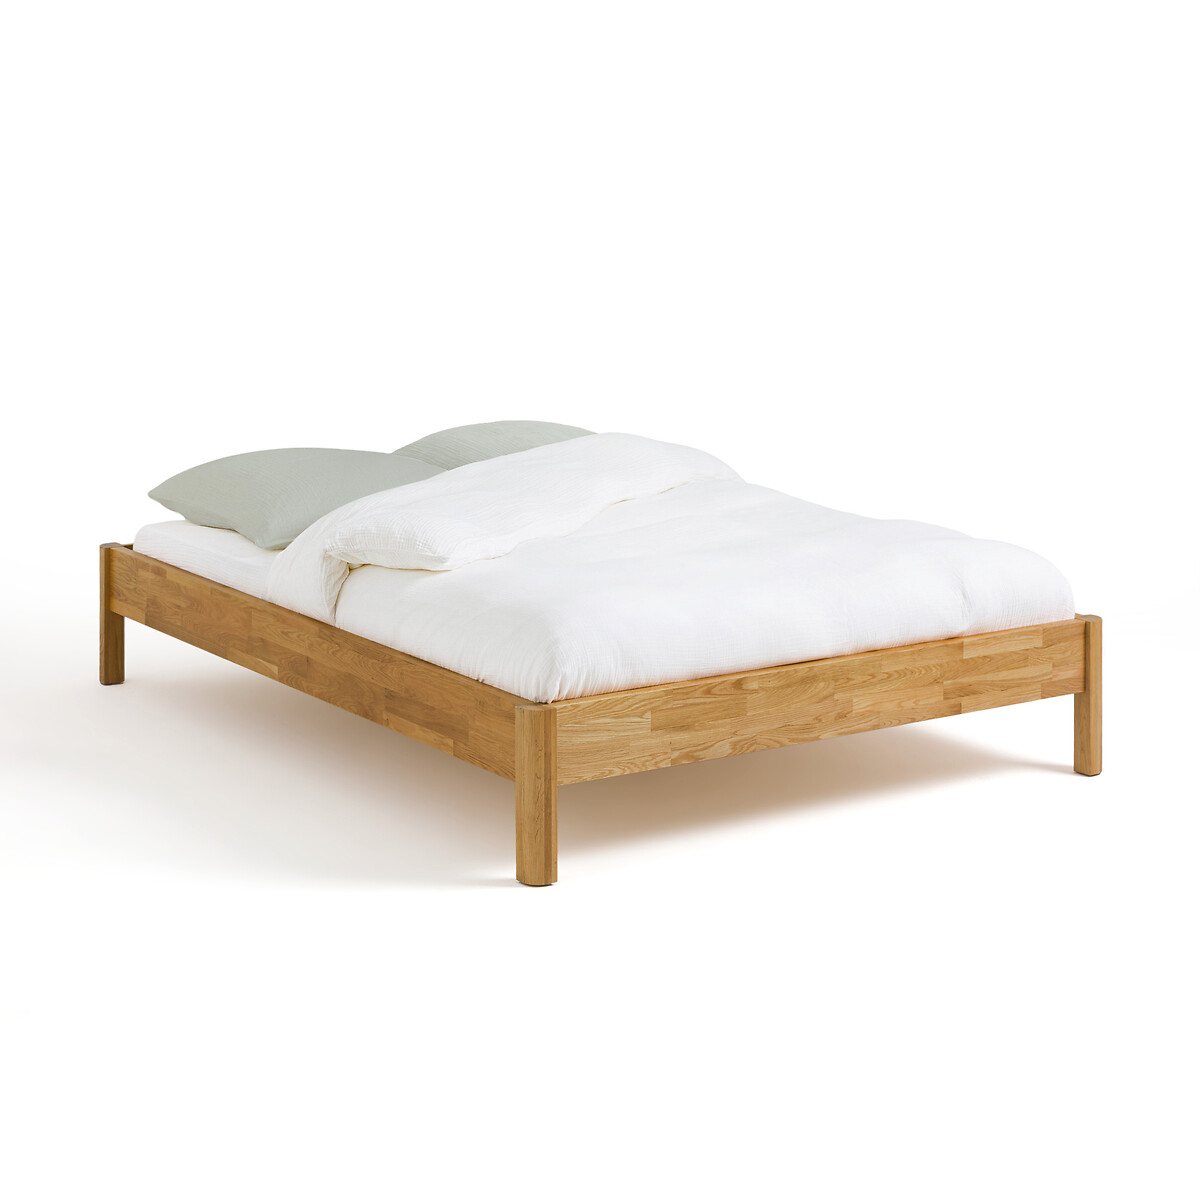 Кровать LaRedoute Кровать Из массива дуба с сеткой Zulda 180 x 200 см каштановый